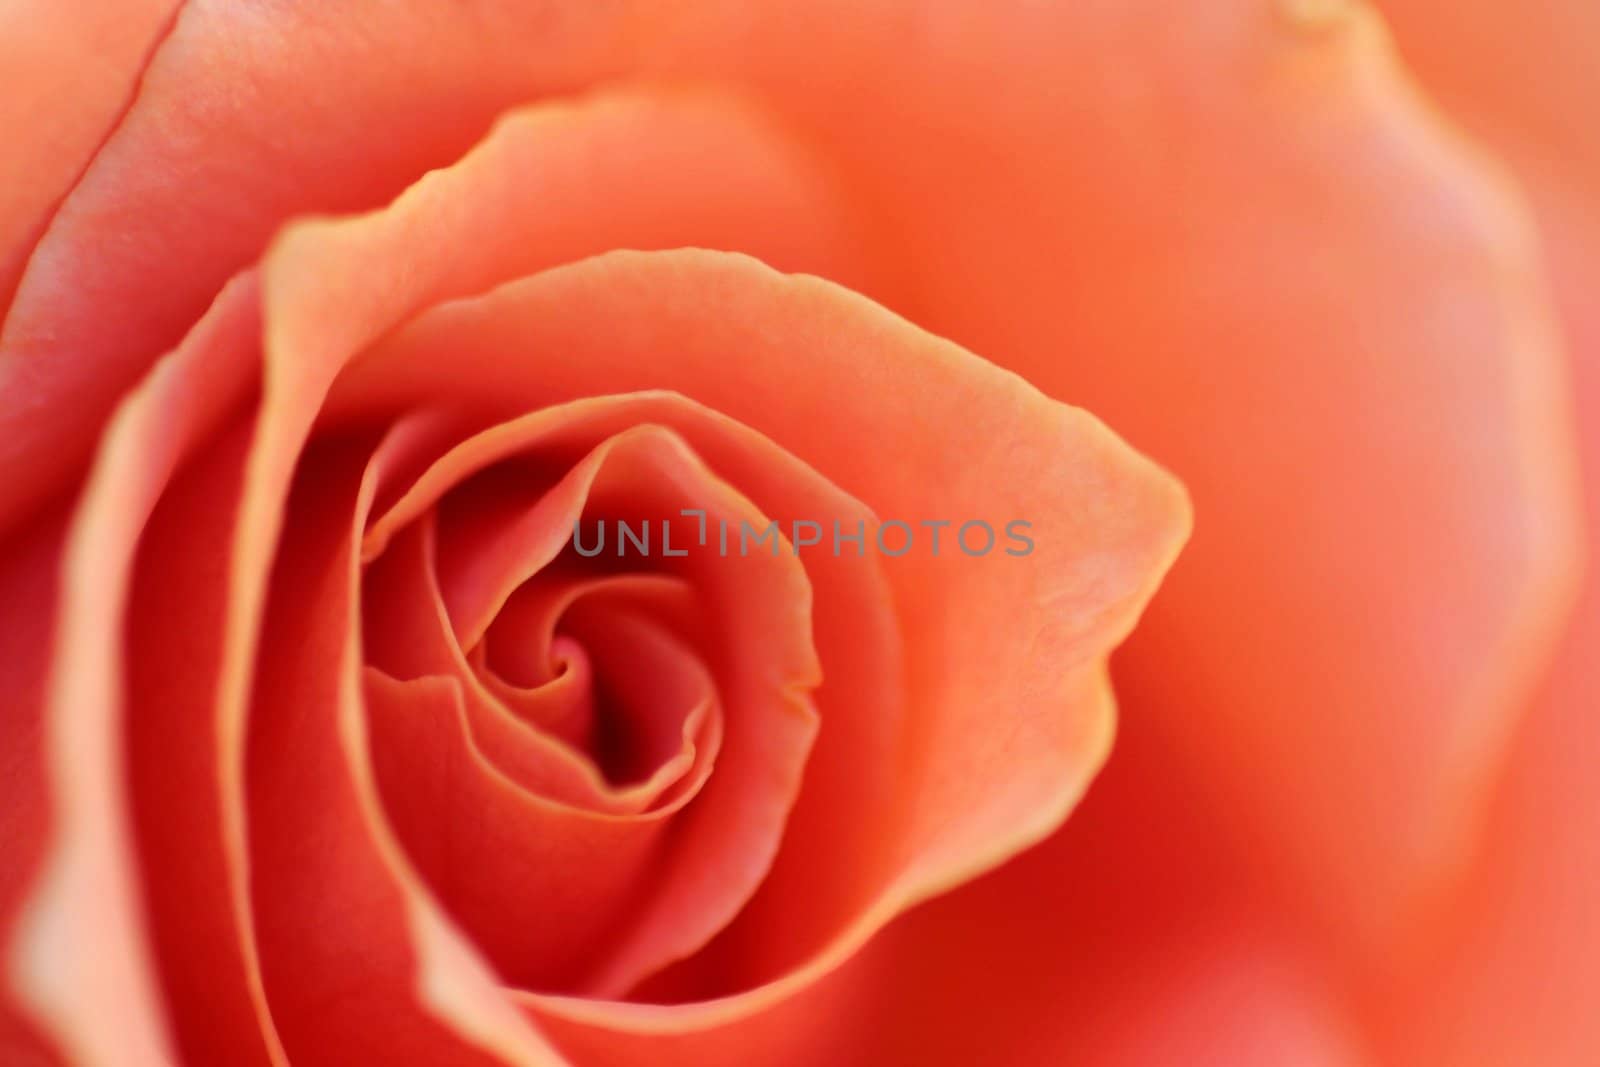 Soft Rose Petals (2754) by hlehnerer